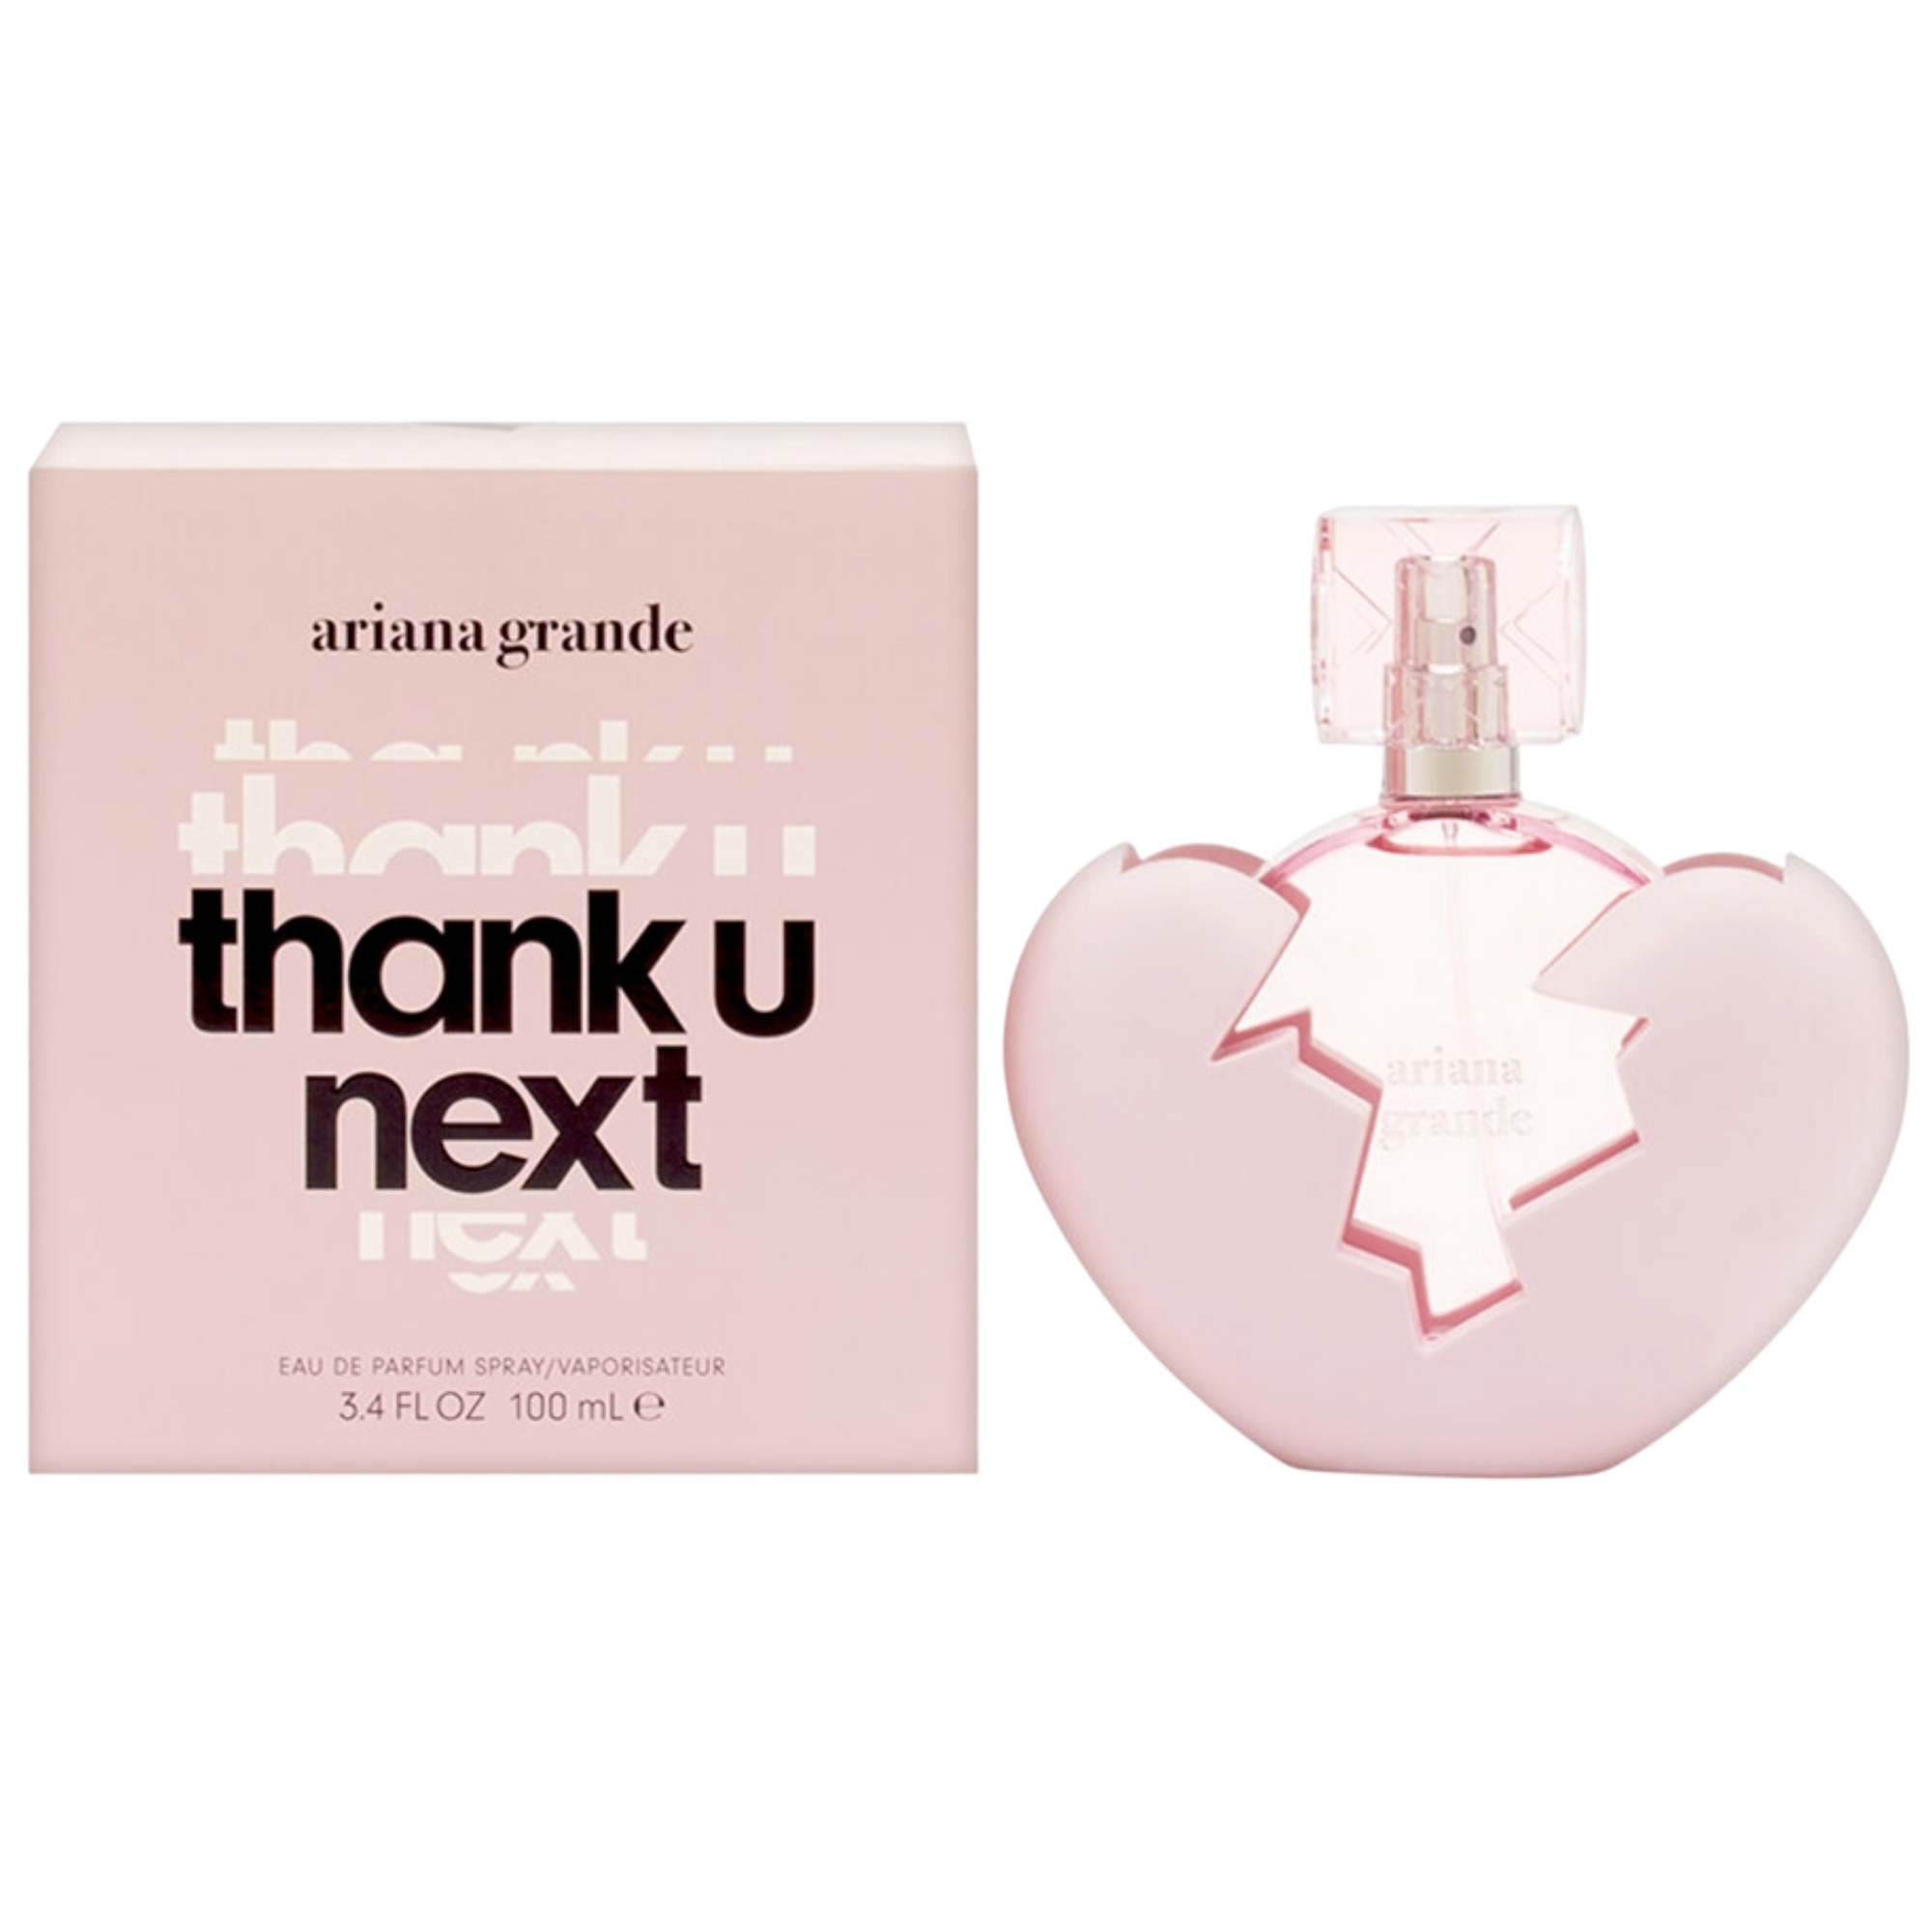 Perfume Ariana Grande Thank u Next 100ml EDP | CAZANOVA – Cazanovaonline